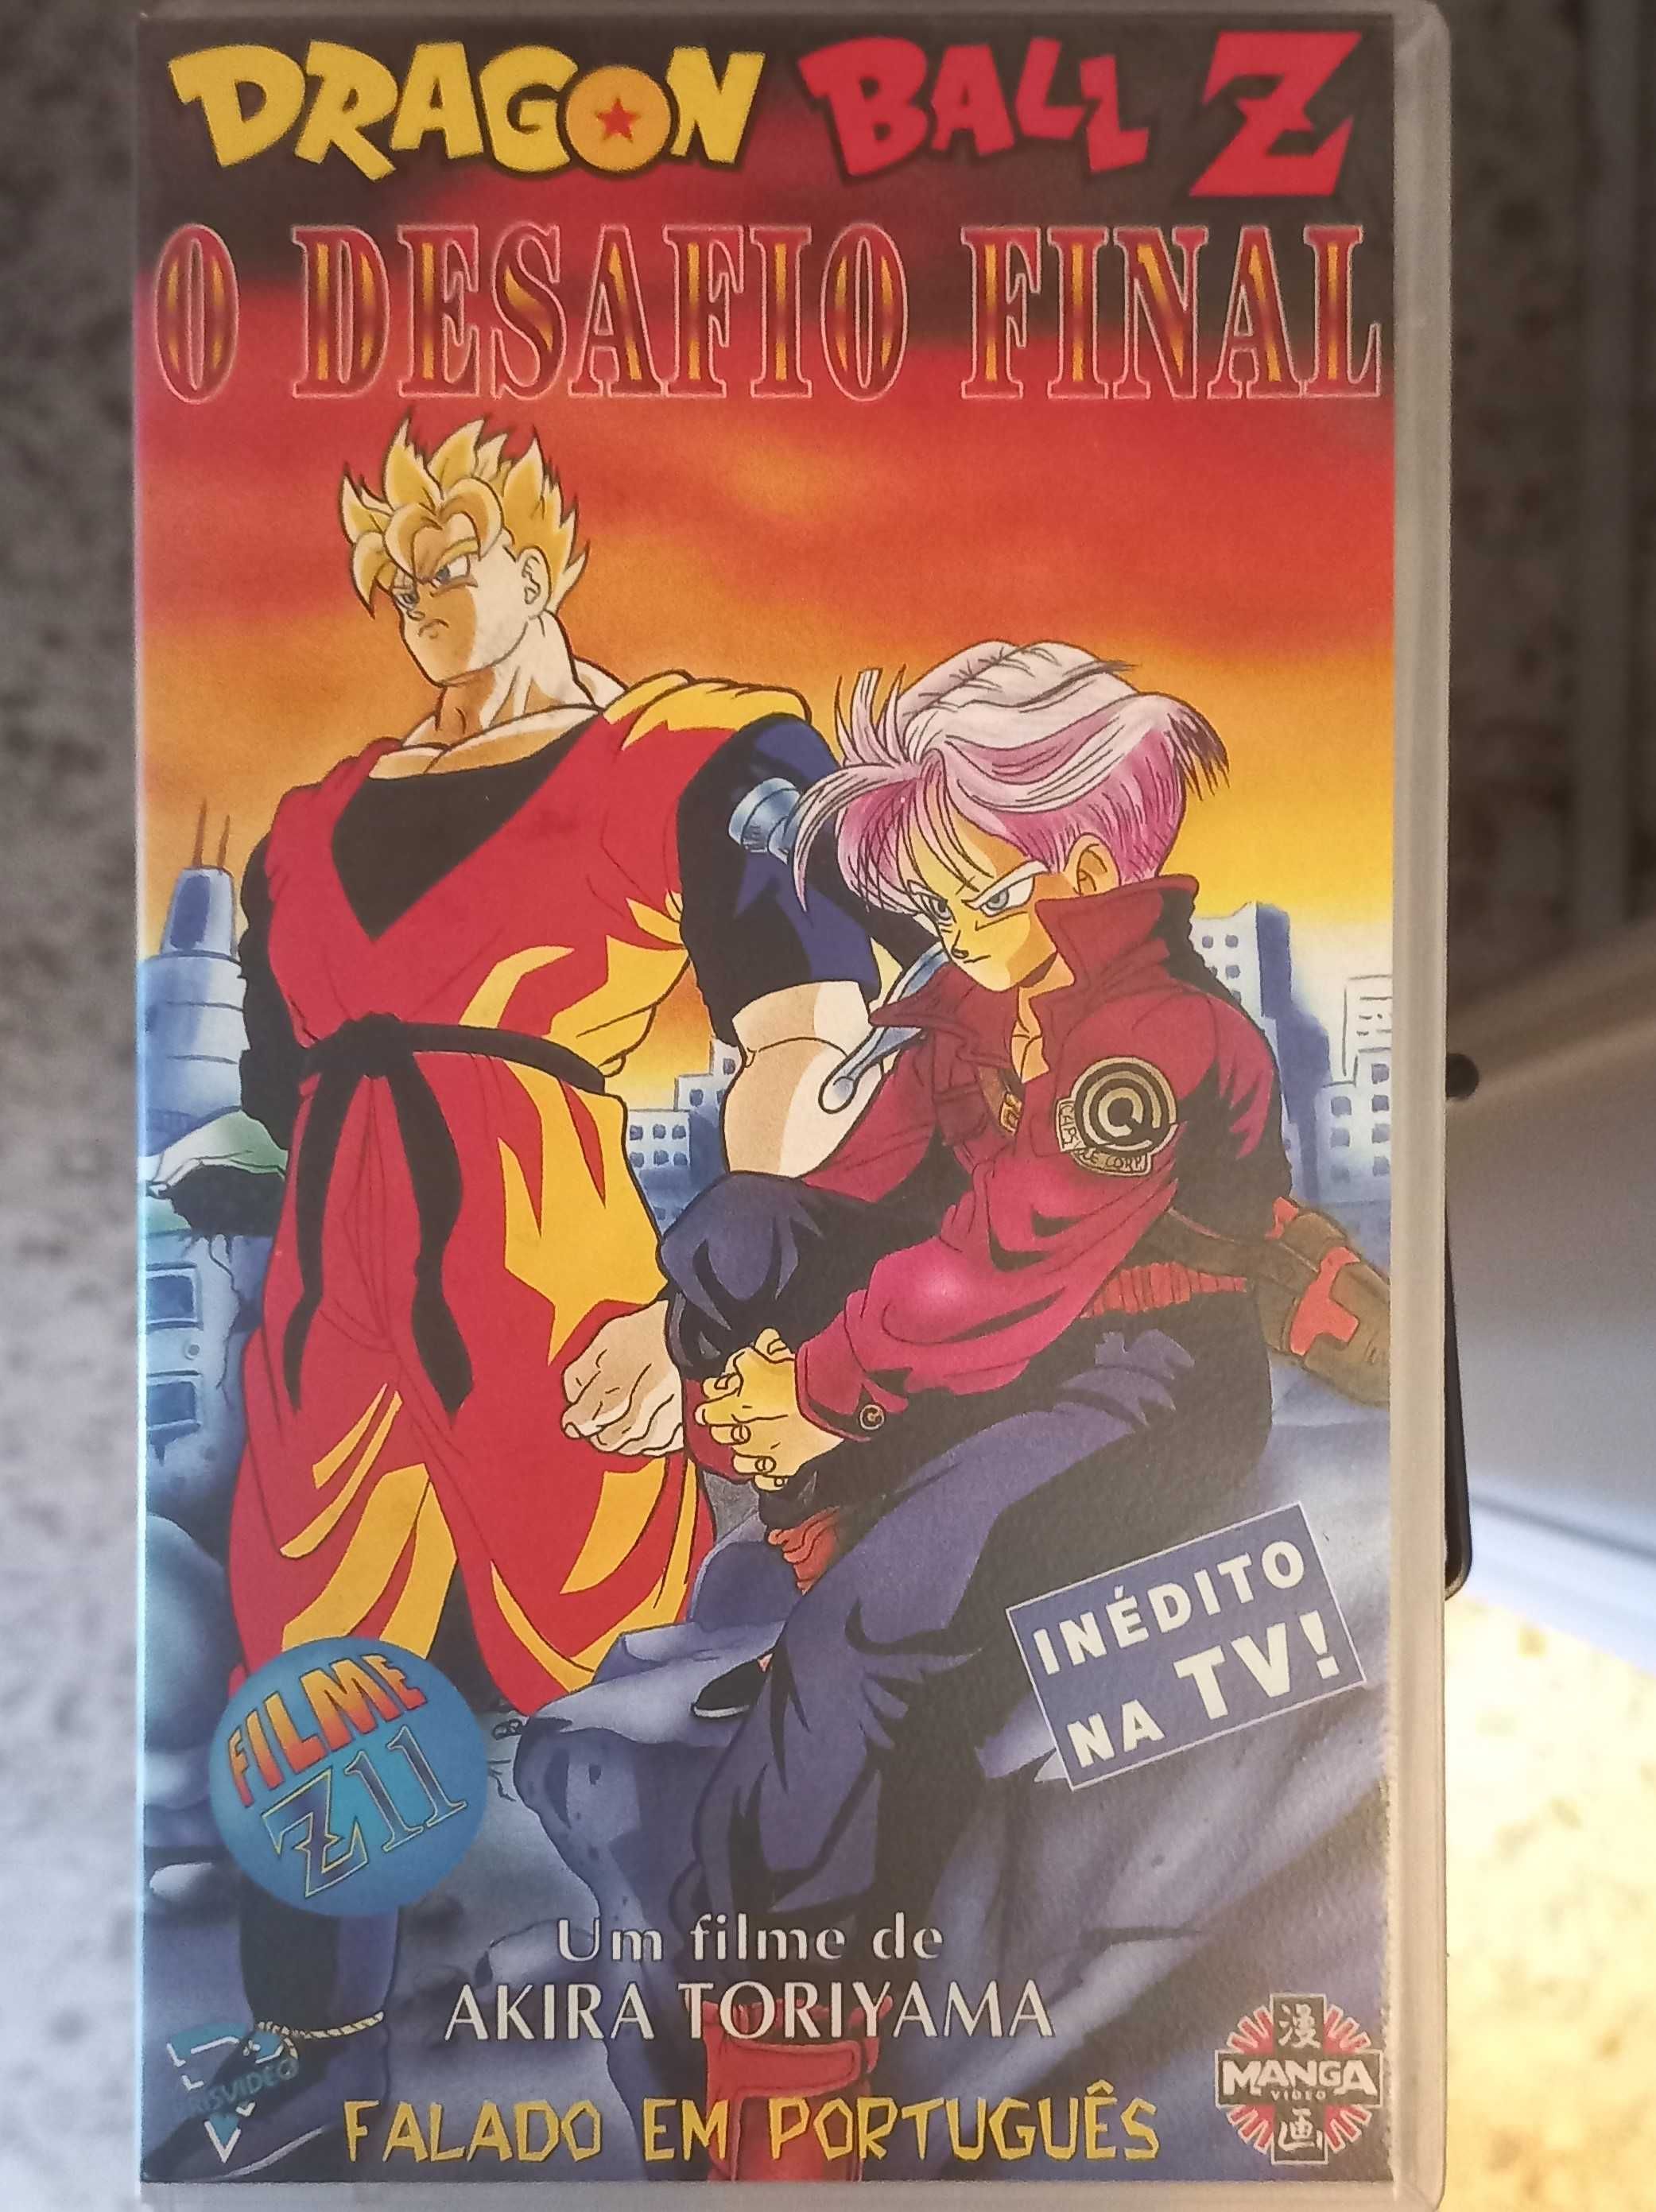 Dragon Ball Coleção completa VHS-PT Ribeira • OLX Portugal